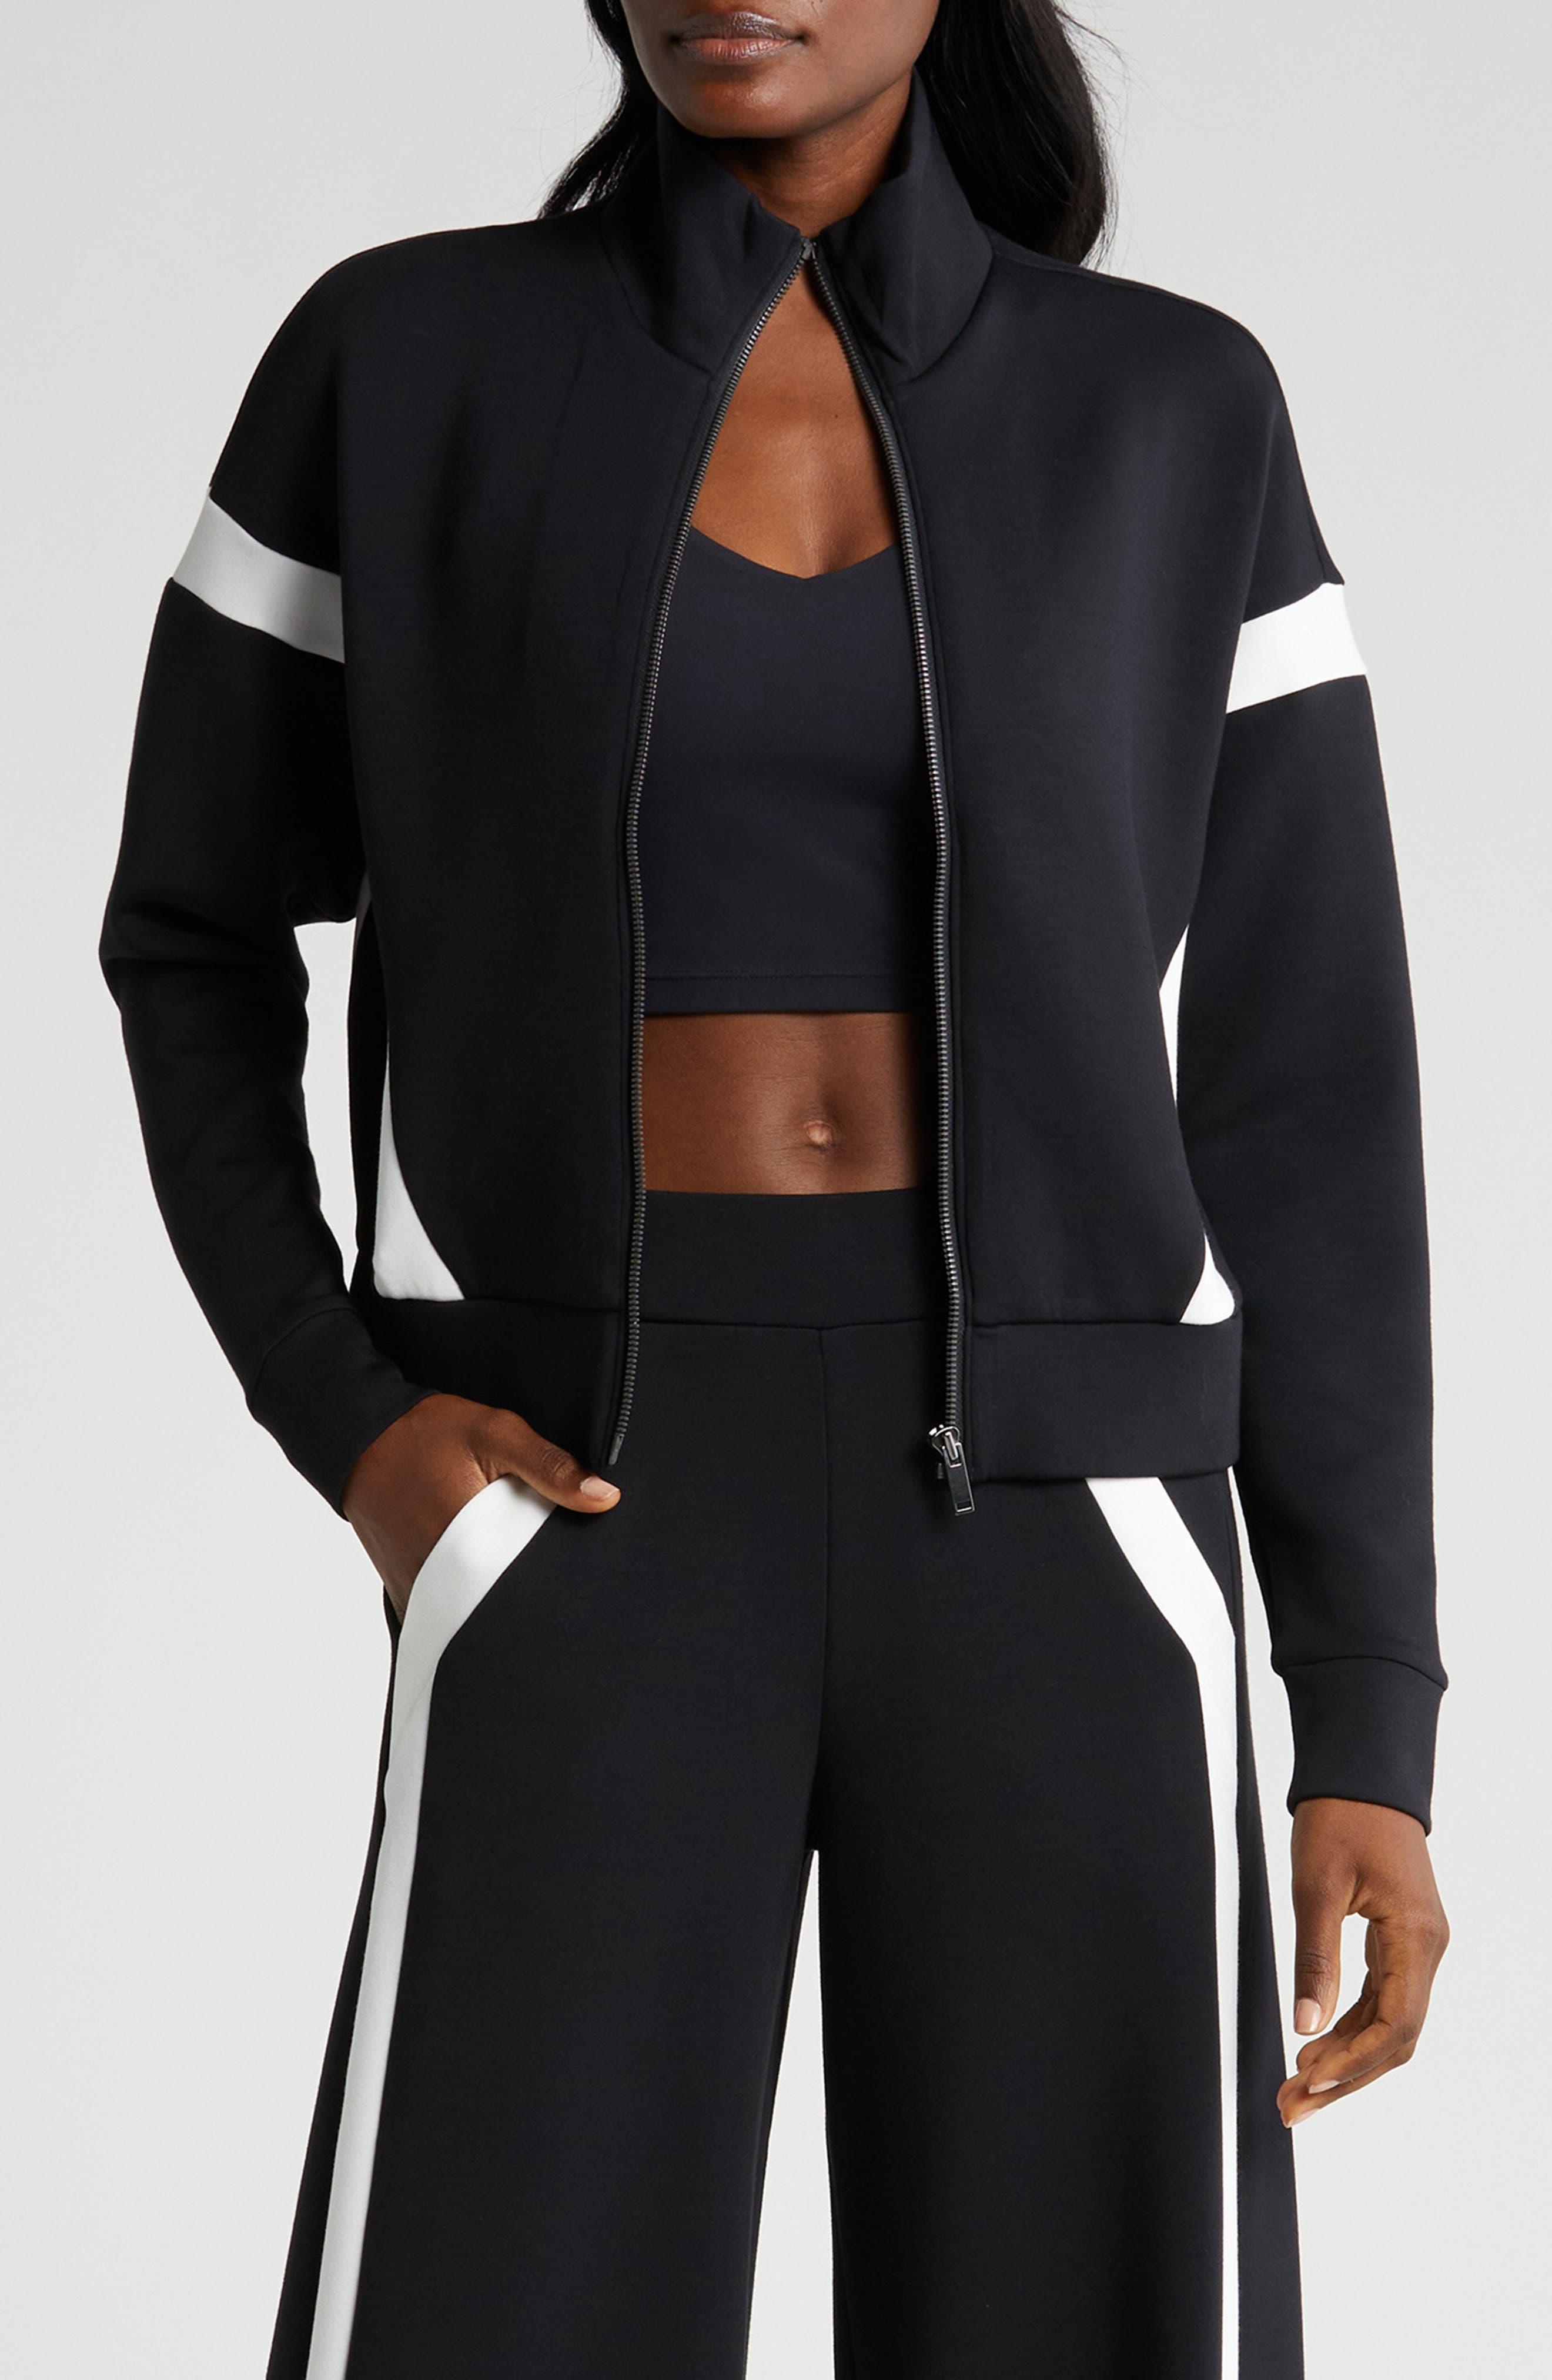 Spanx Blazers & Jackets, Womens Air Essentials Cocoon Black